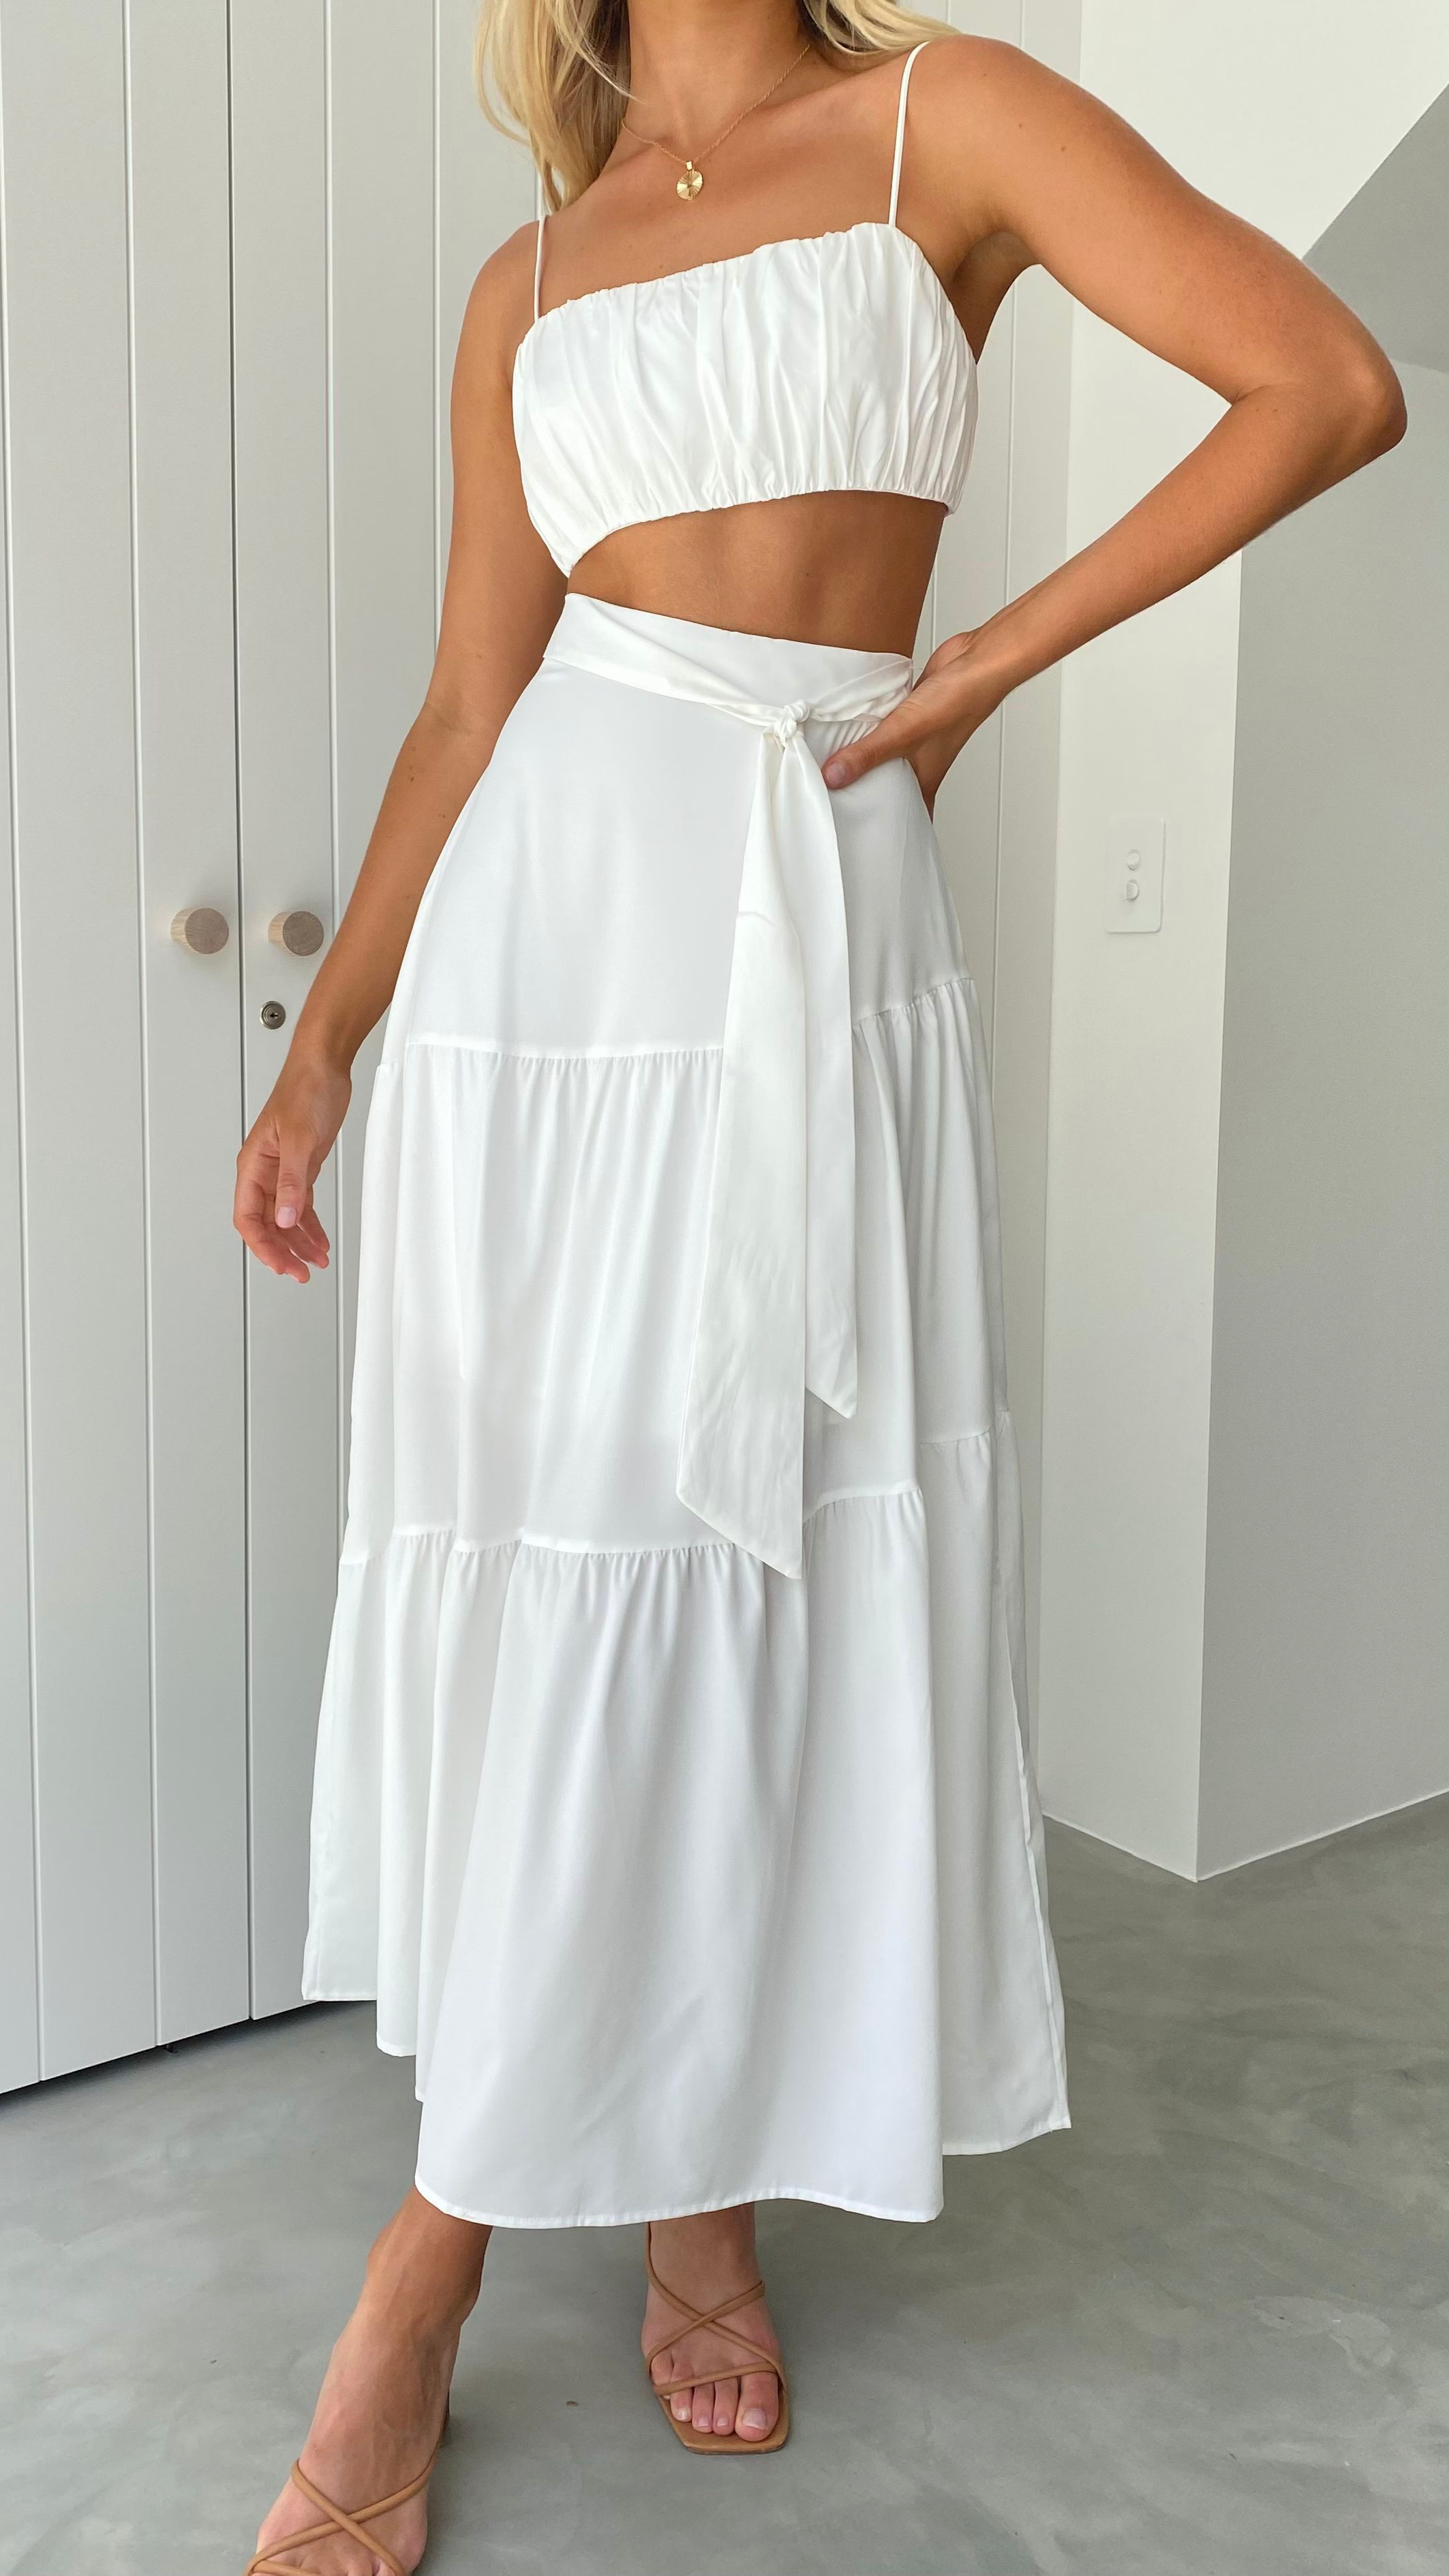 Saraya Top and Skirt Set - White - Billy J